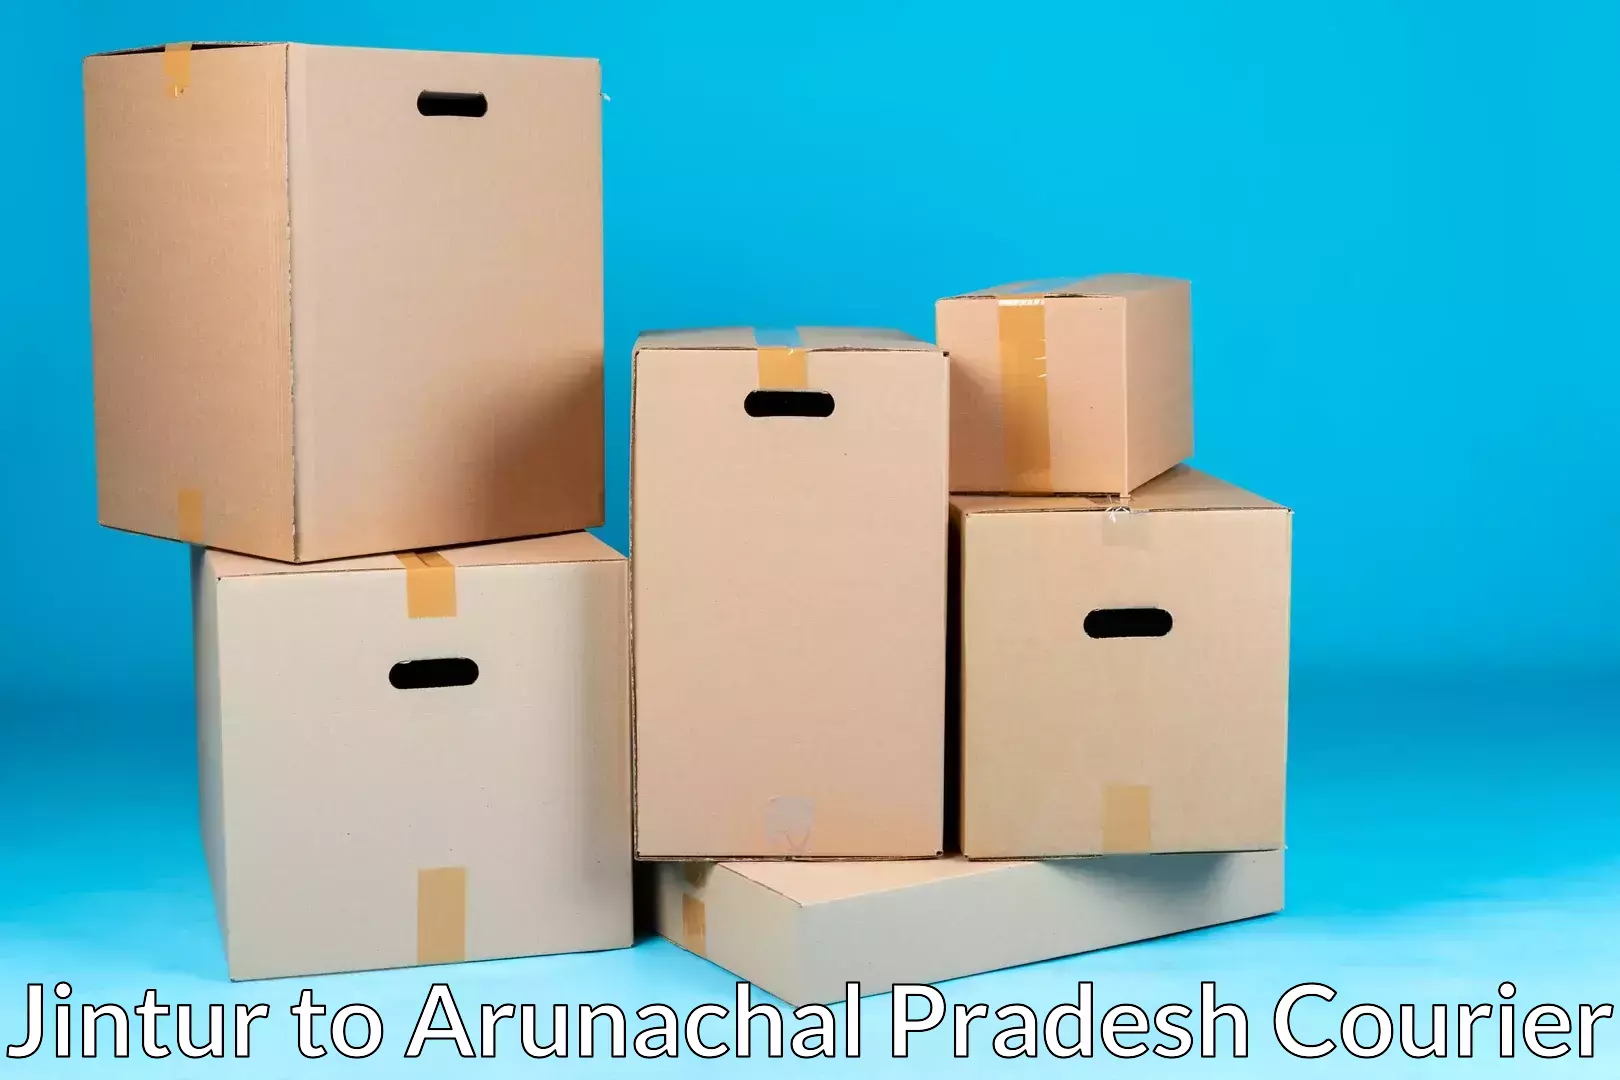 Efficient relocation services Jintur to Arunachal Pradesh